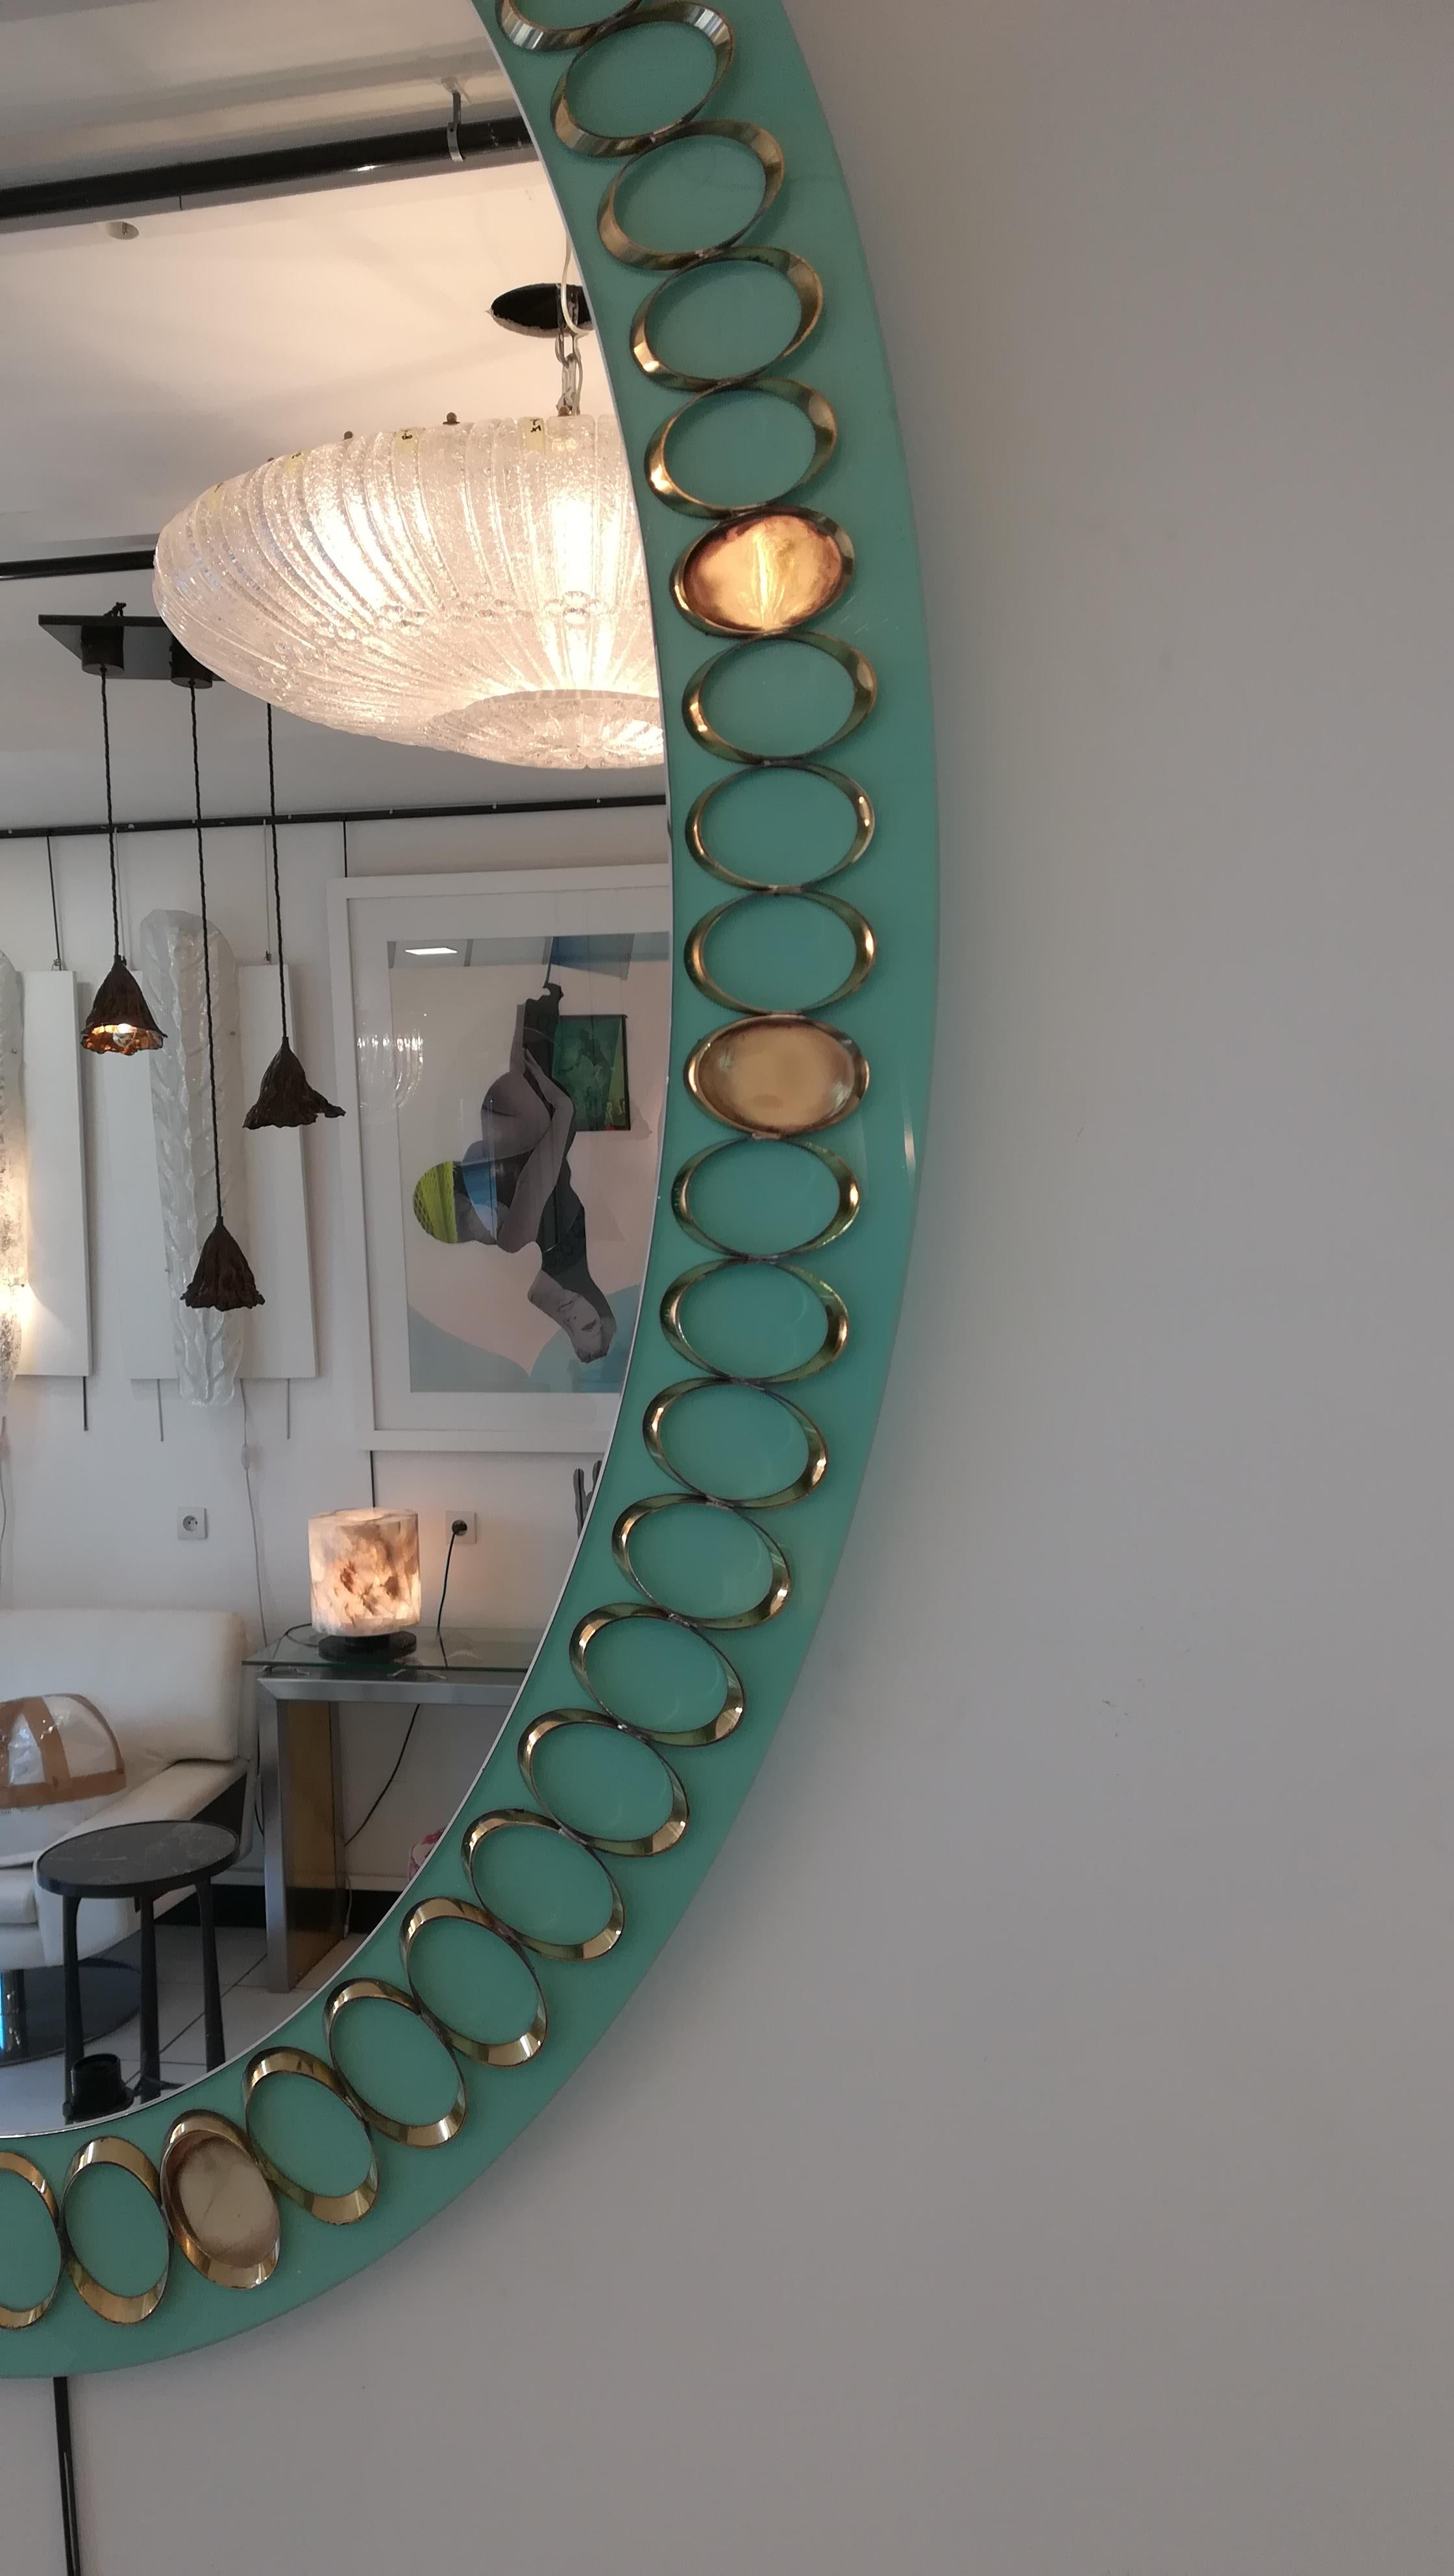 miroirs italiens des années 1950 en verre opalin et laiton, en parfait état (deux pièces).